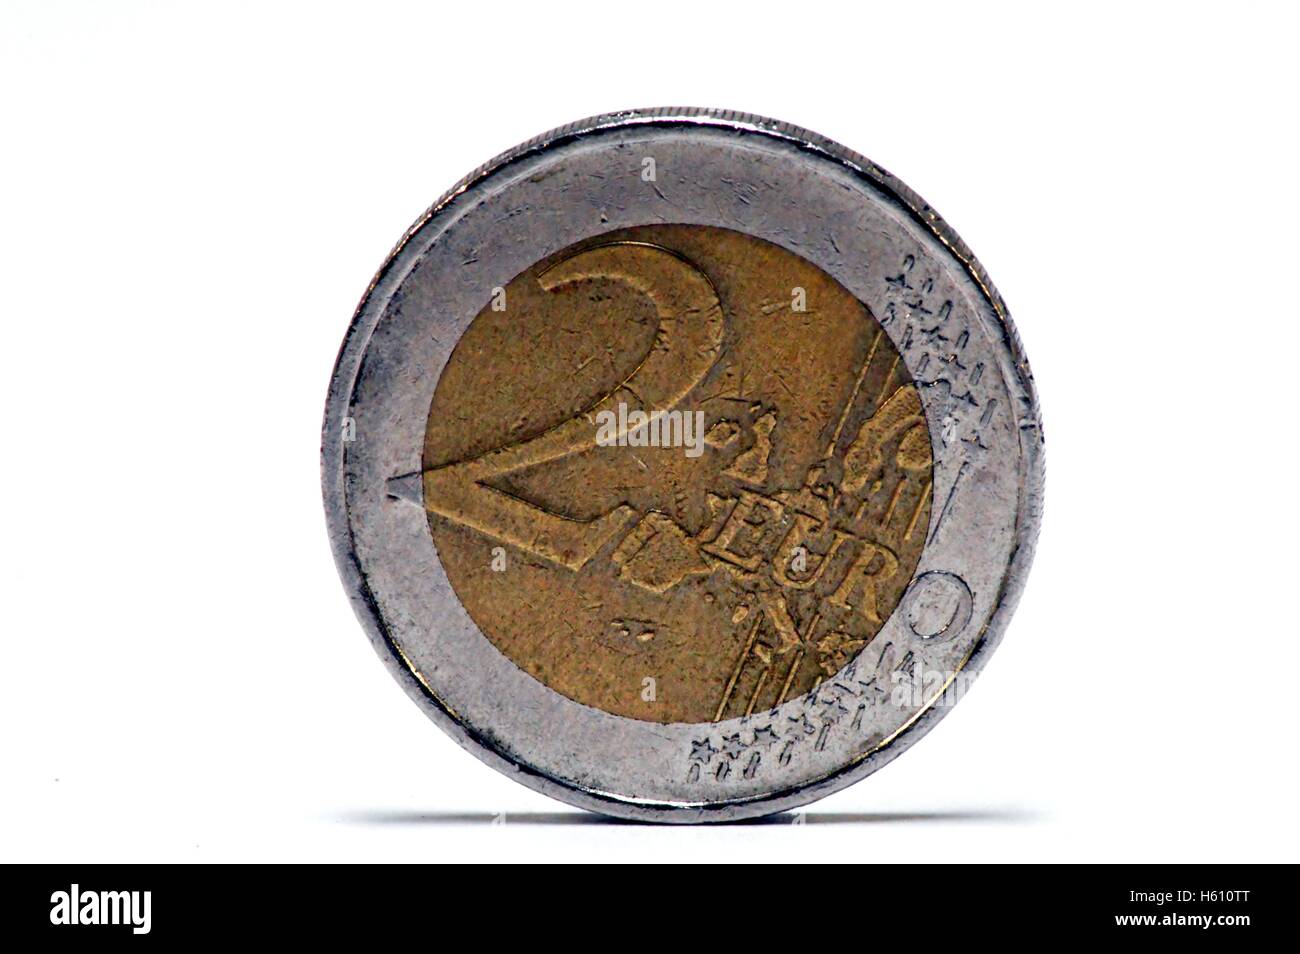 Pièce de 2 euros de l'euro mis sur le flan avec un fond blanc. Banque D'Images